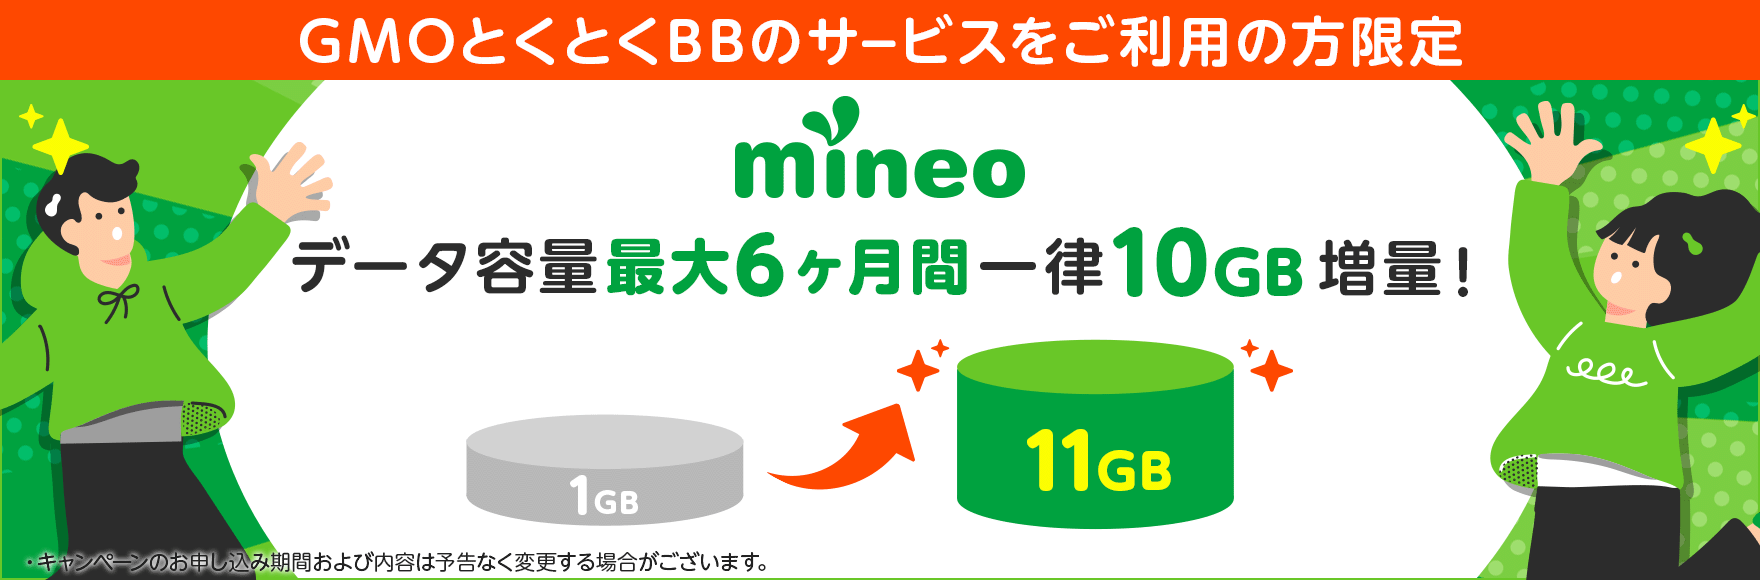 mineo GMOとくとくBB限定特典